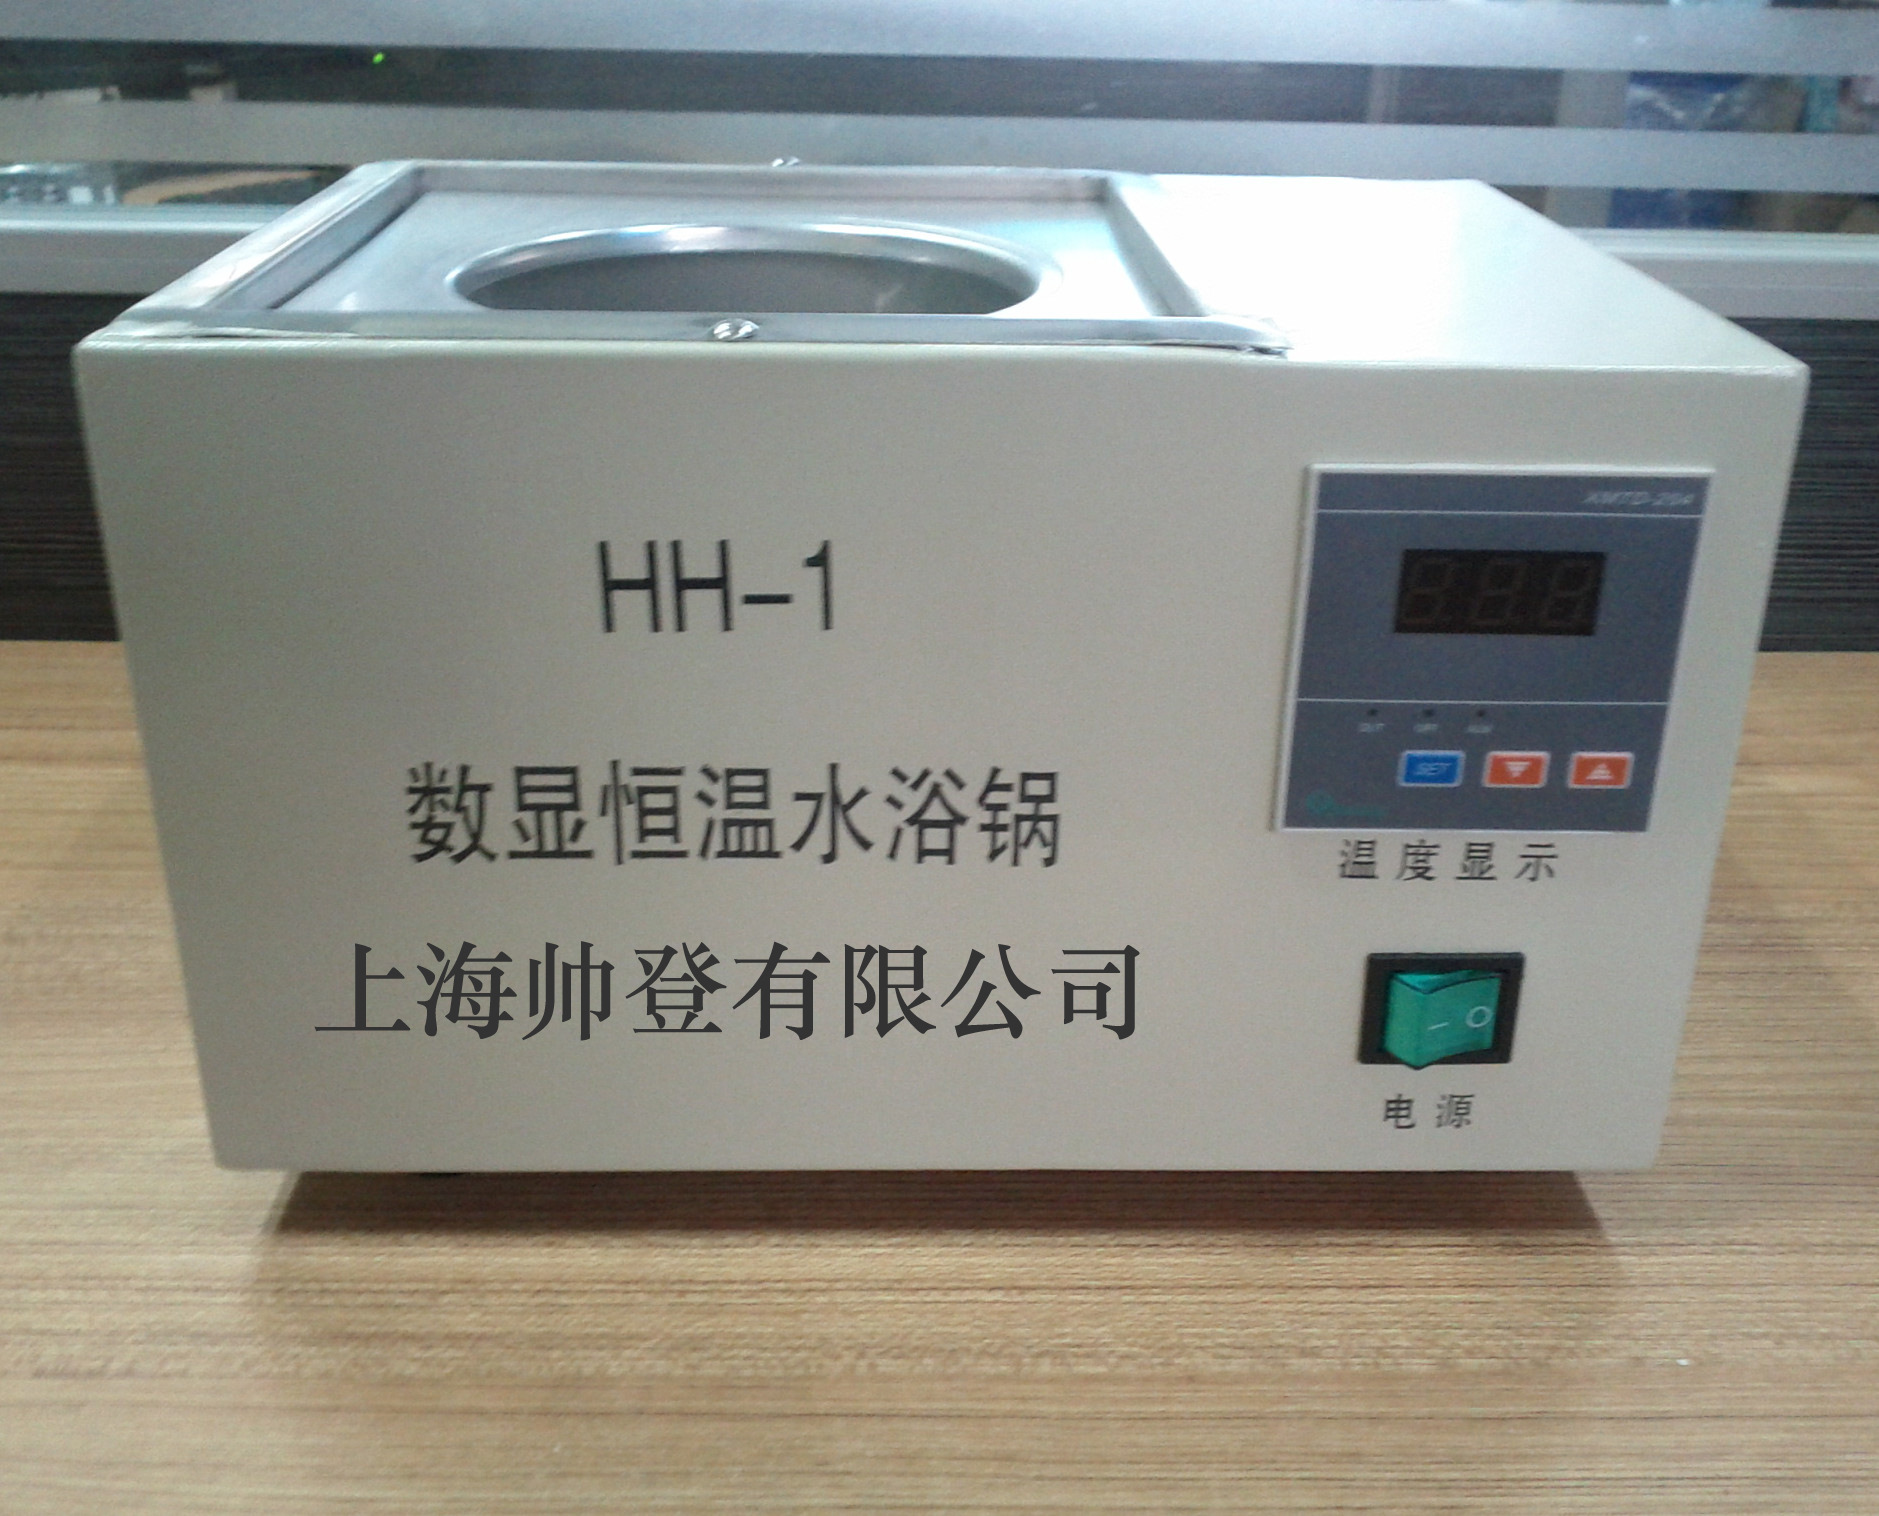 hh-1数显单孔恒温水浴锅是辅助恒温实验仪器,由外壳,内胆和